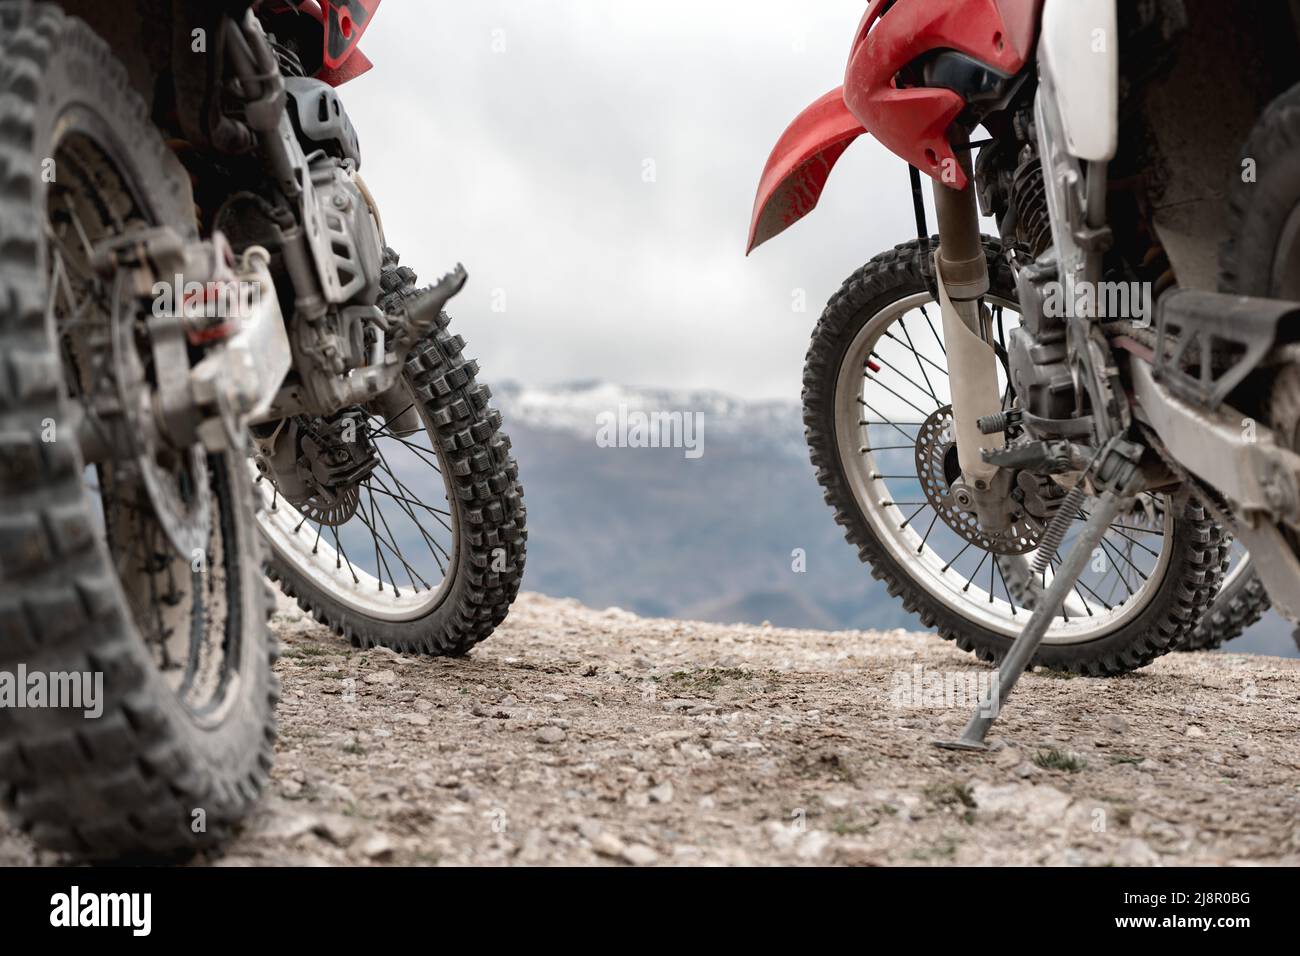 Two enduro cross motorbikes parked in mountains Stock Photo